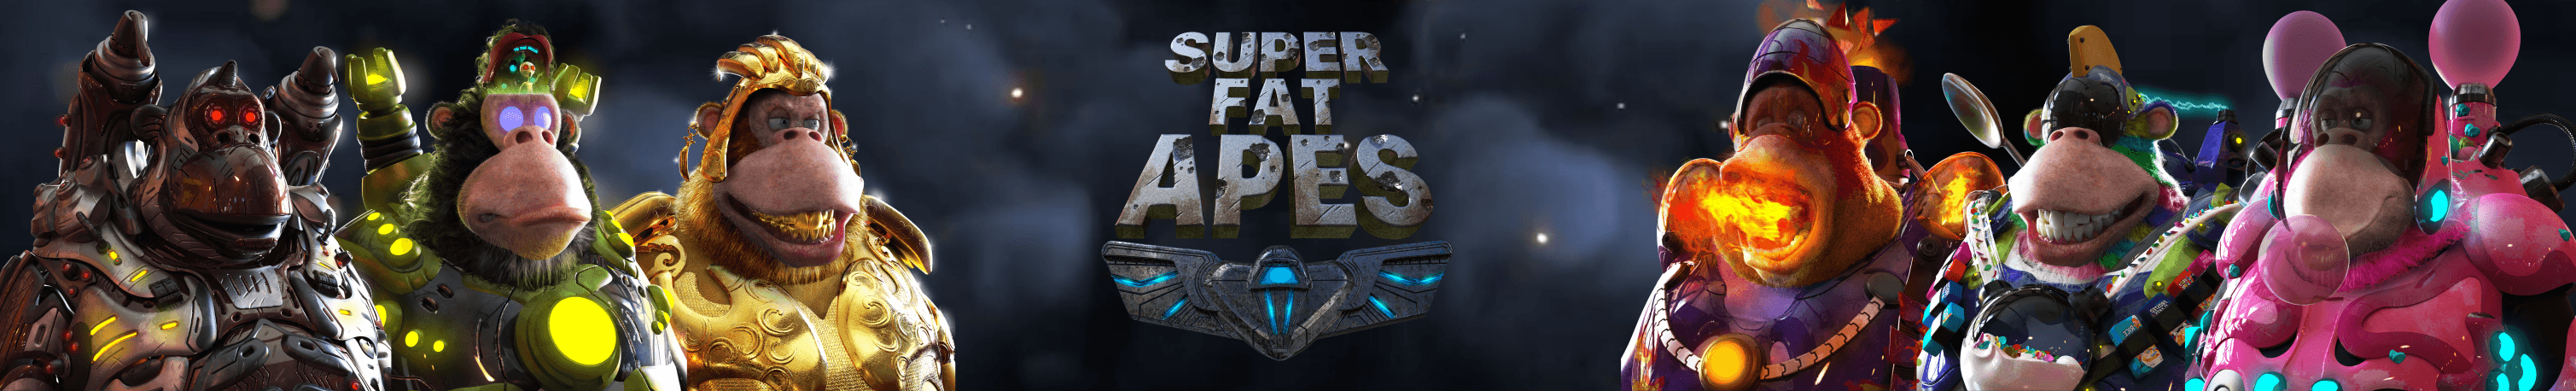 Super Fat Apes